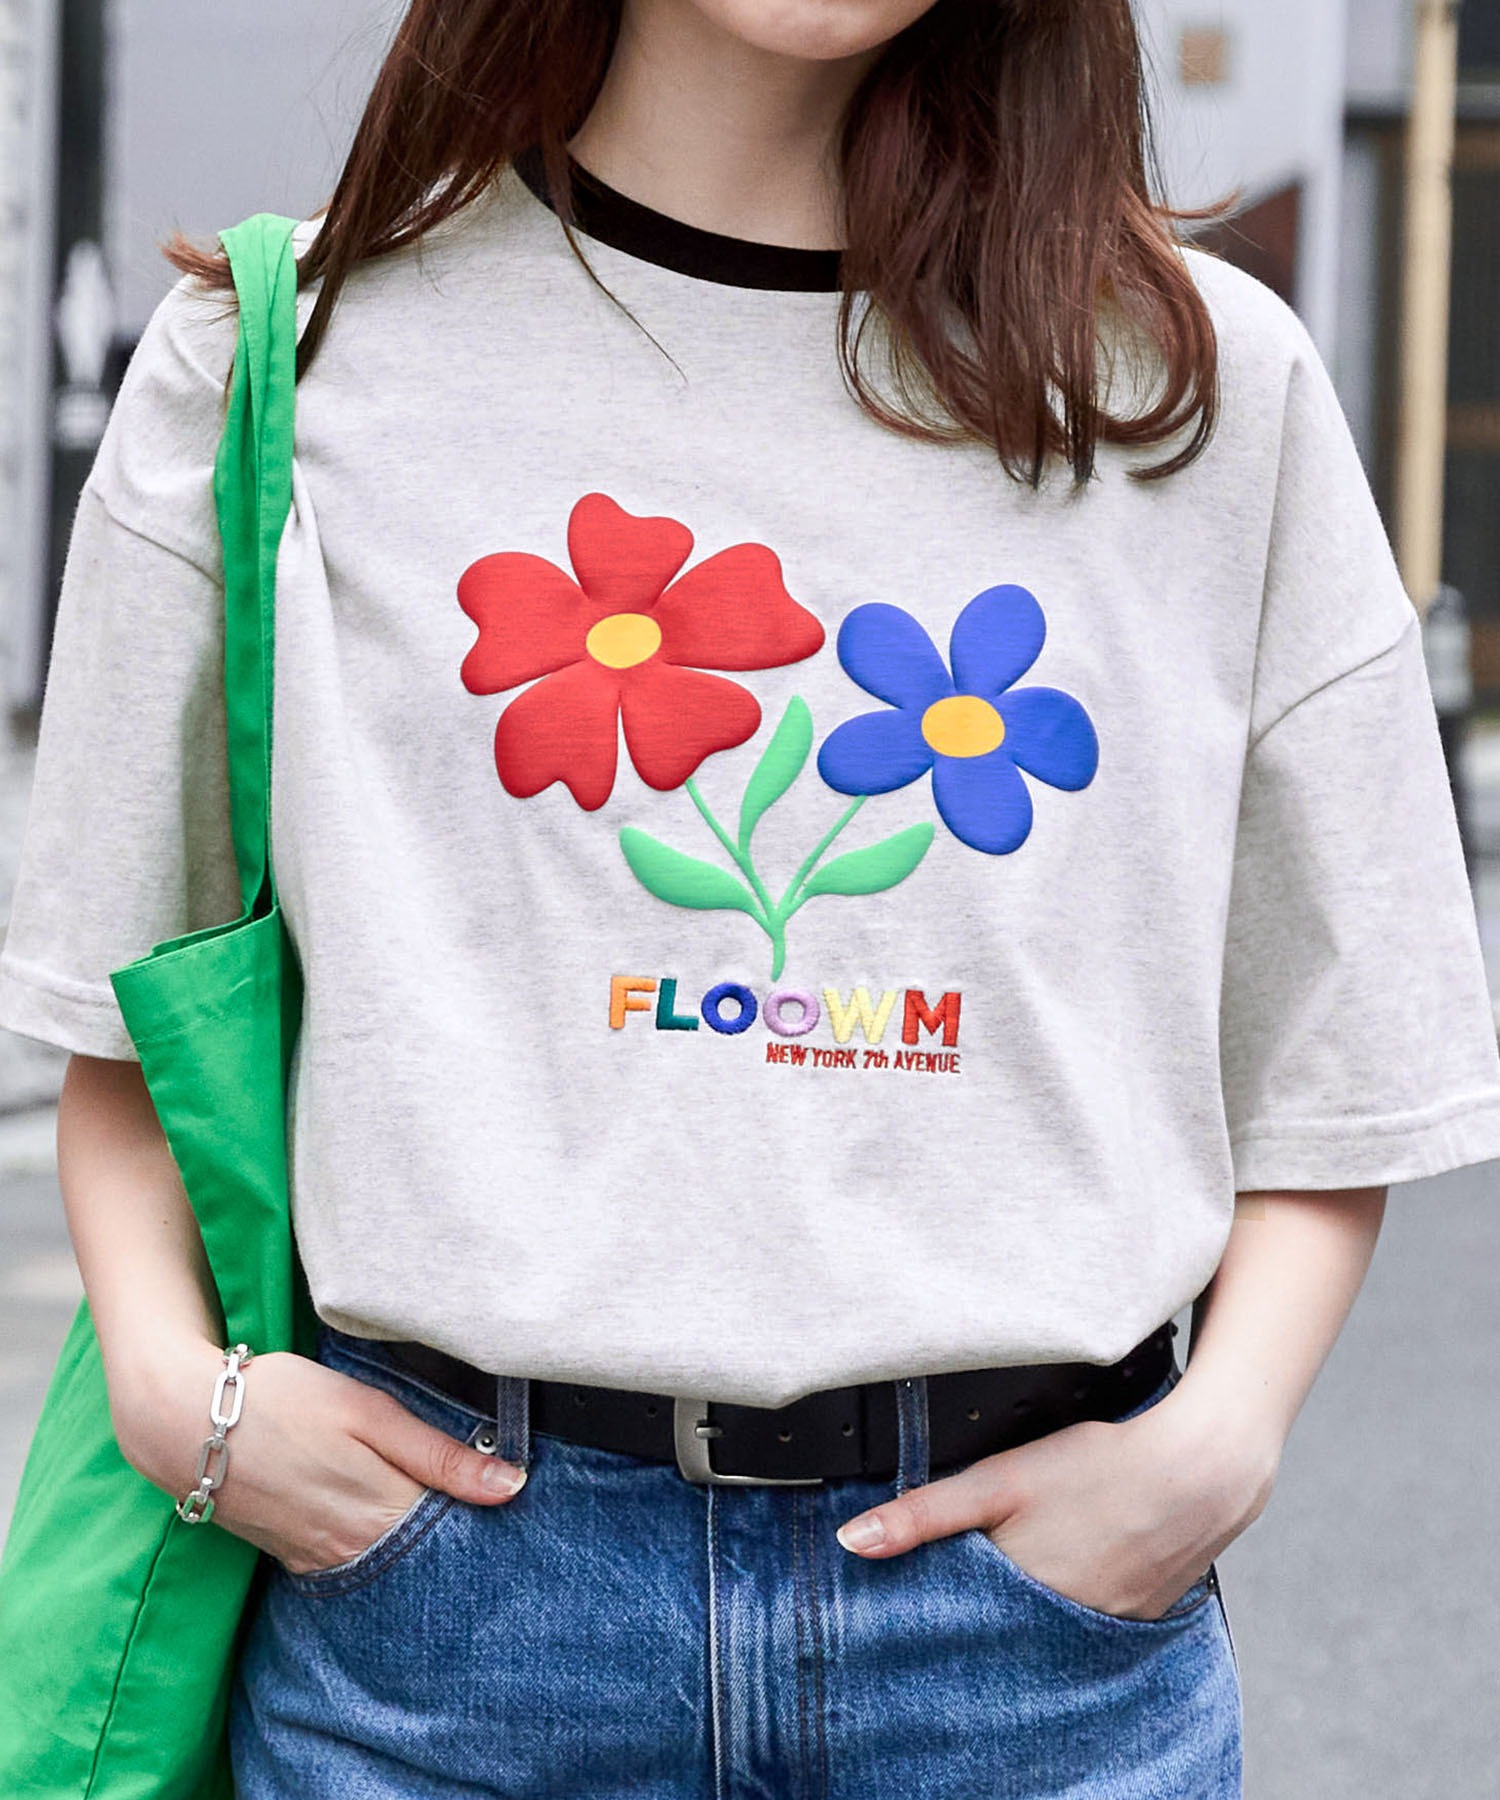 【FLOOWM】フラワーロゴ 発泡/刺繍コンビ ビッグシルエット半袖Tシャツ